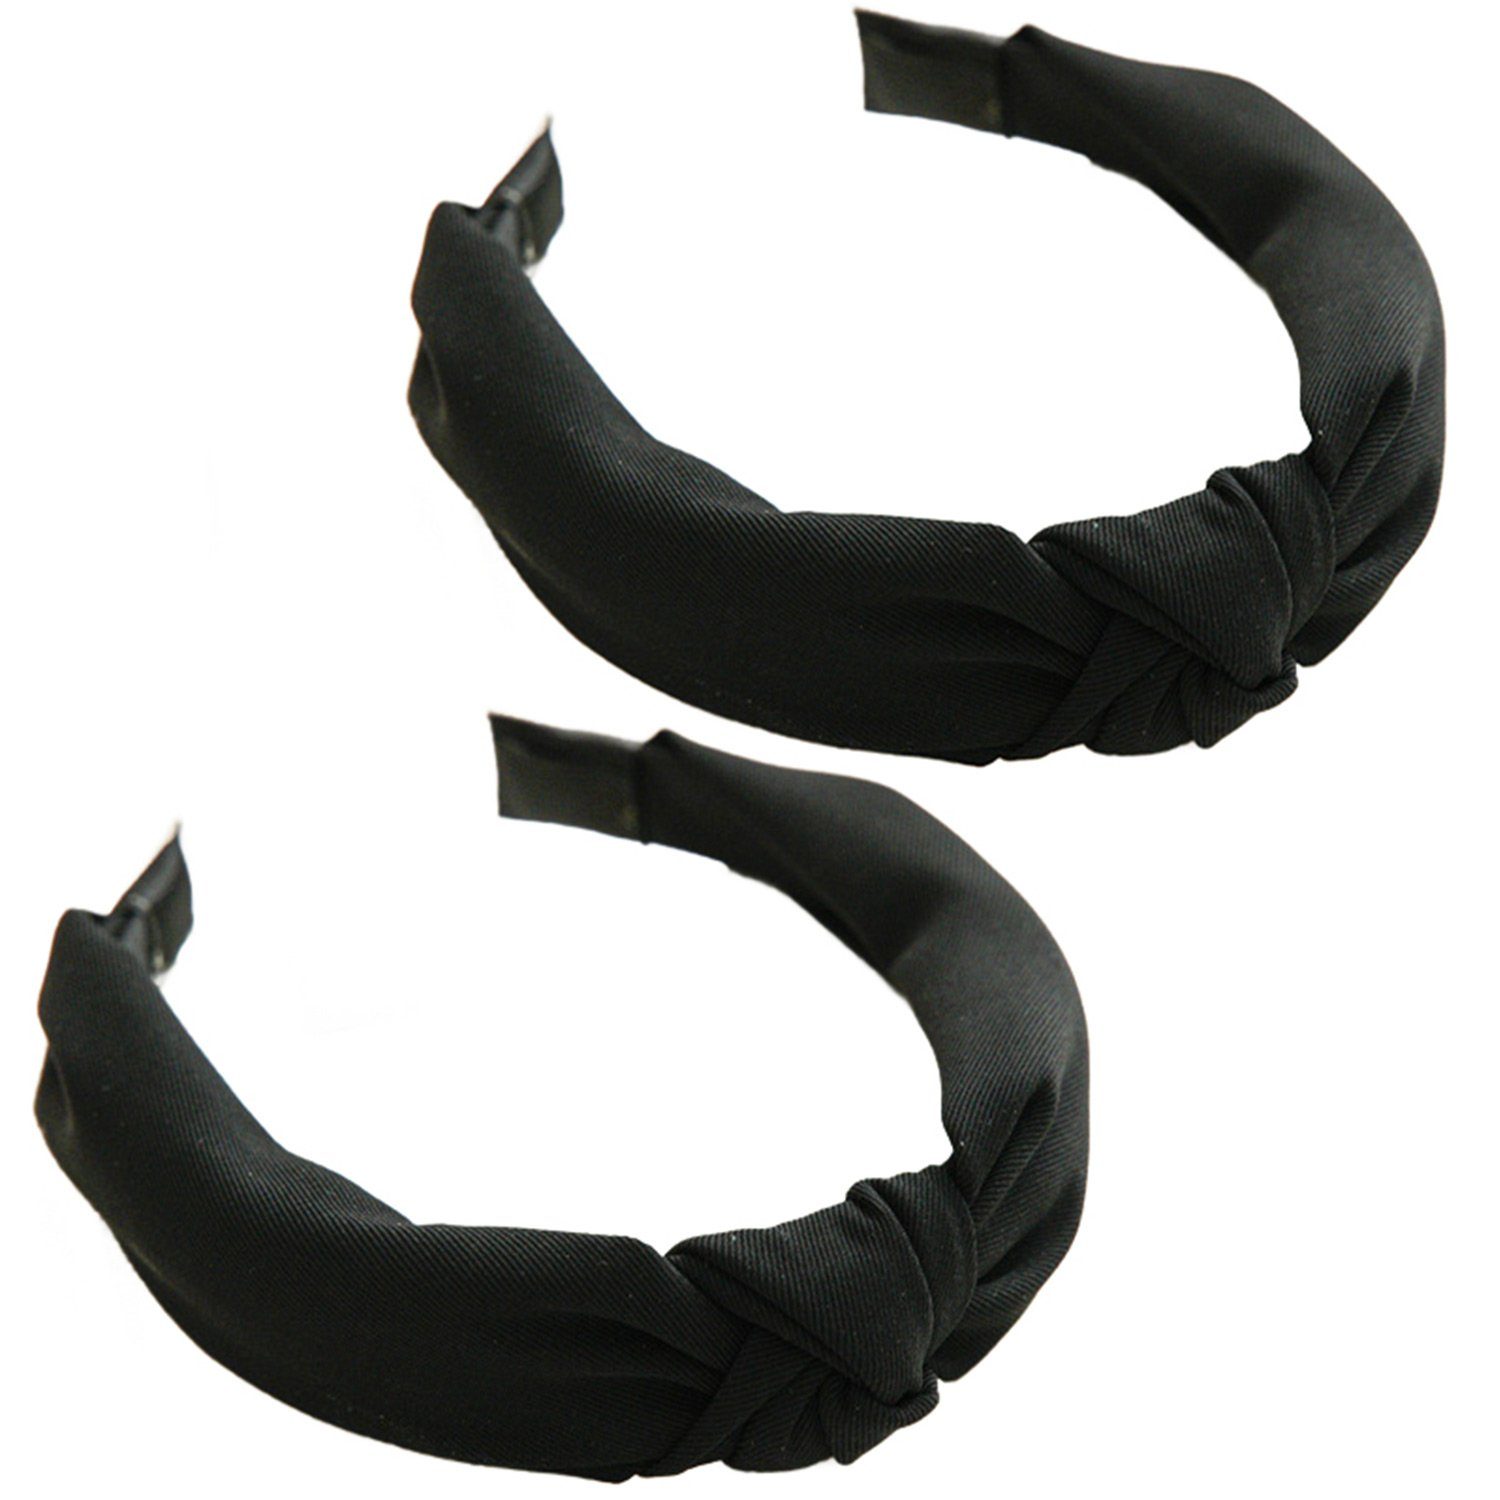 MAGICSHE Stirnband 2 geknotete Stirnbänder in 4 modischenklassischen Farben schwarz